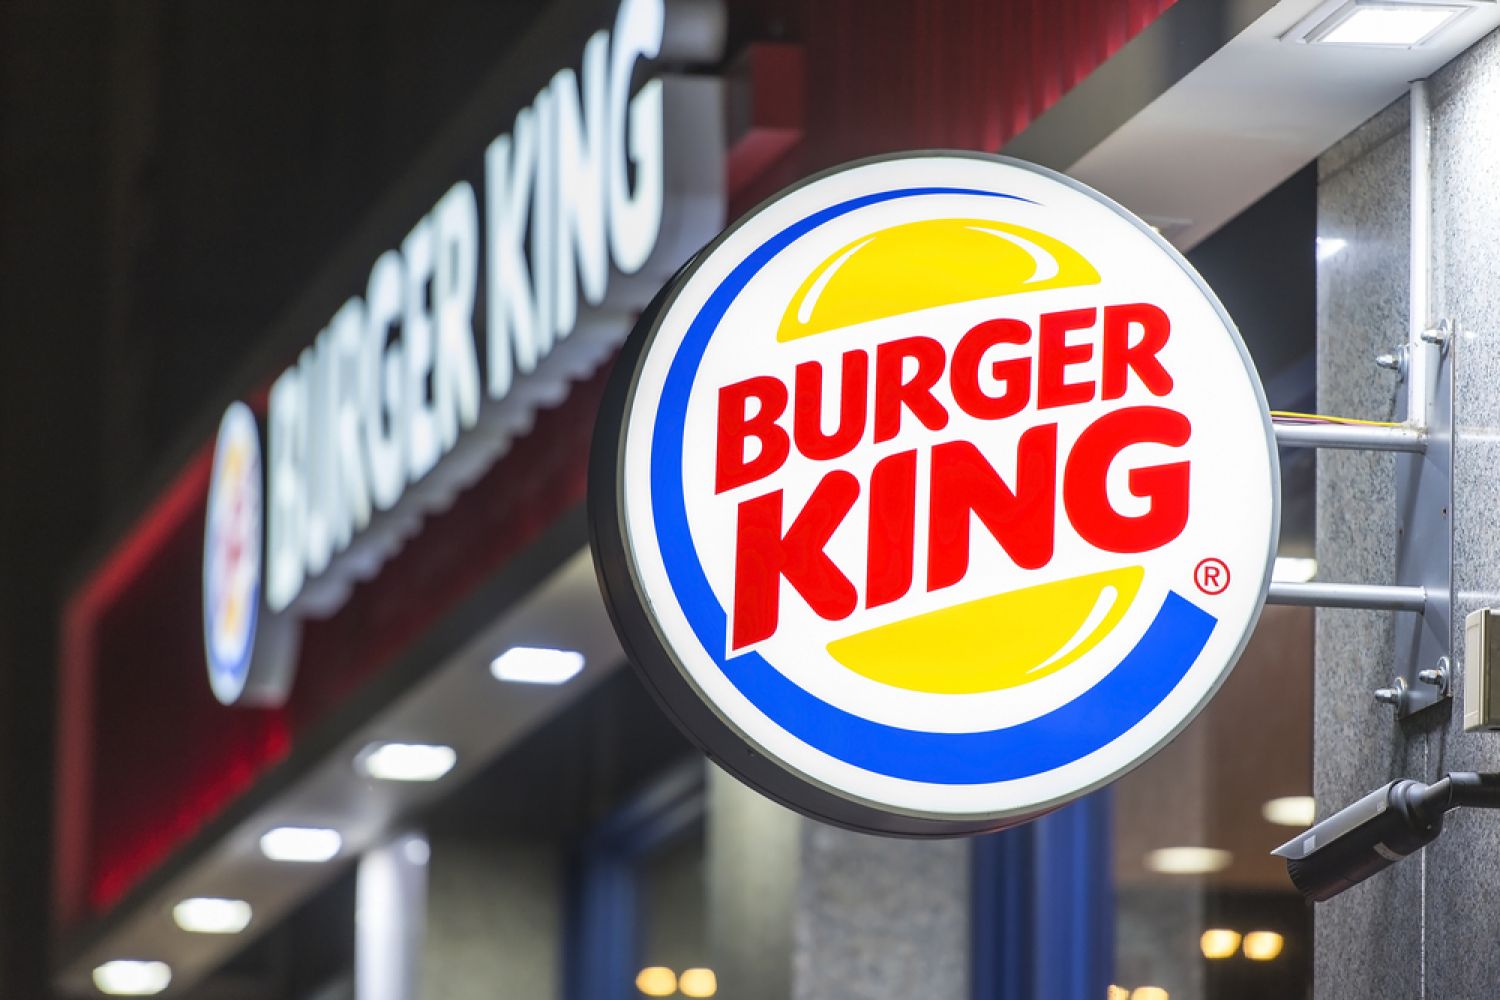 Sarreguemines : Burger King recrute massivement avant une ouverture <br />
au mois d'octobre